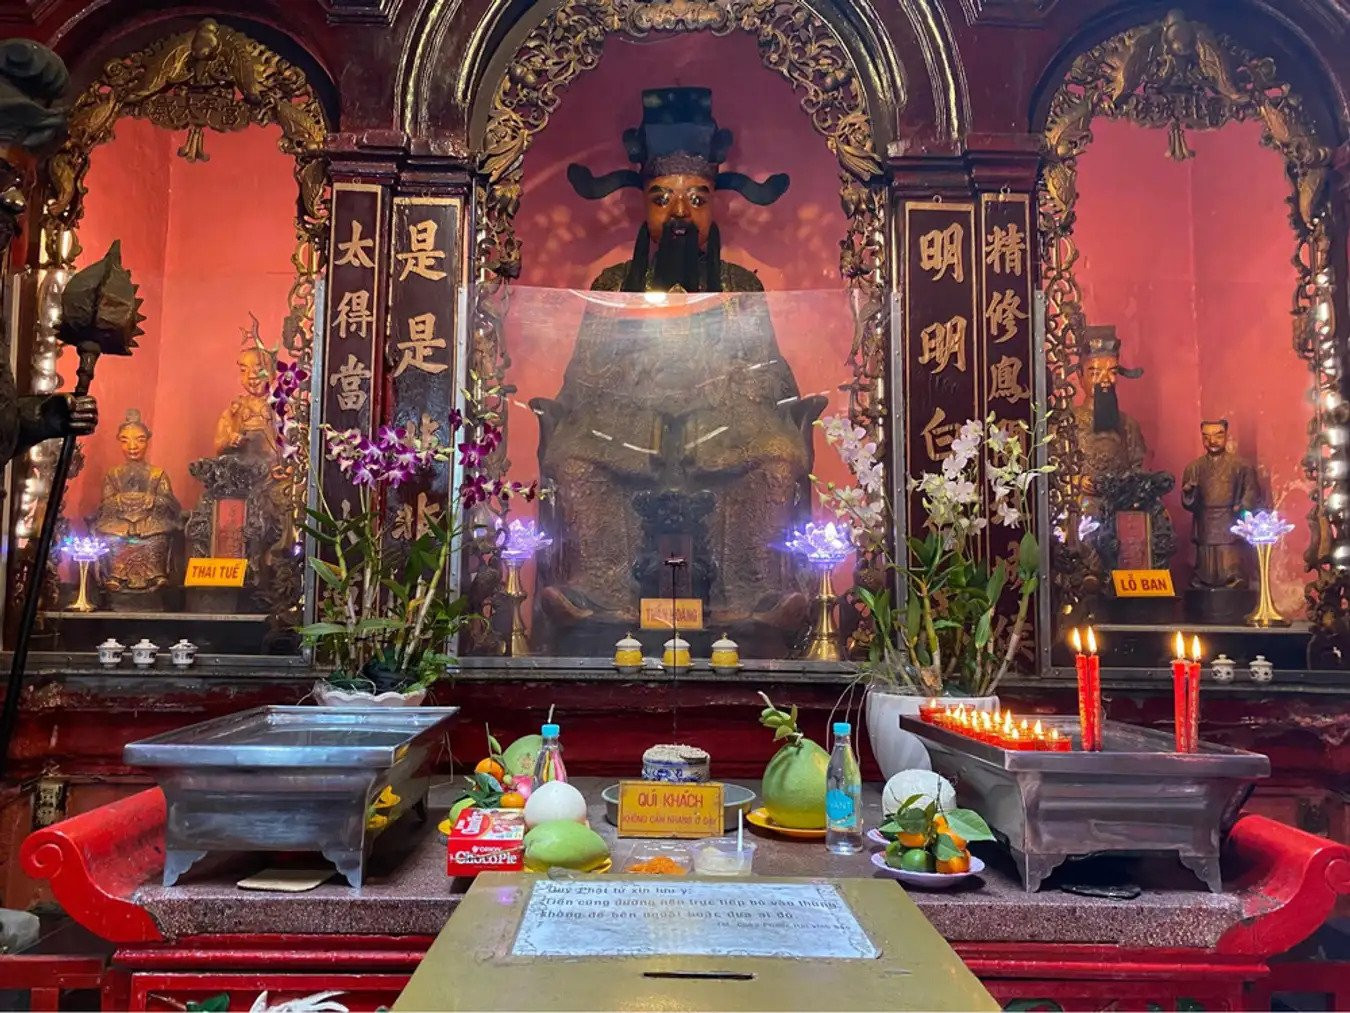 Di sản Hán Nôm trong chùa Phước Hải Tự. Ảnh: Báo Pháp luật